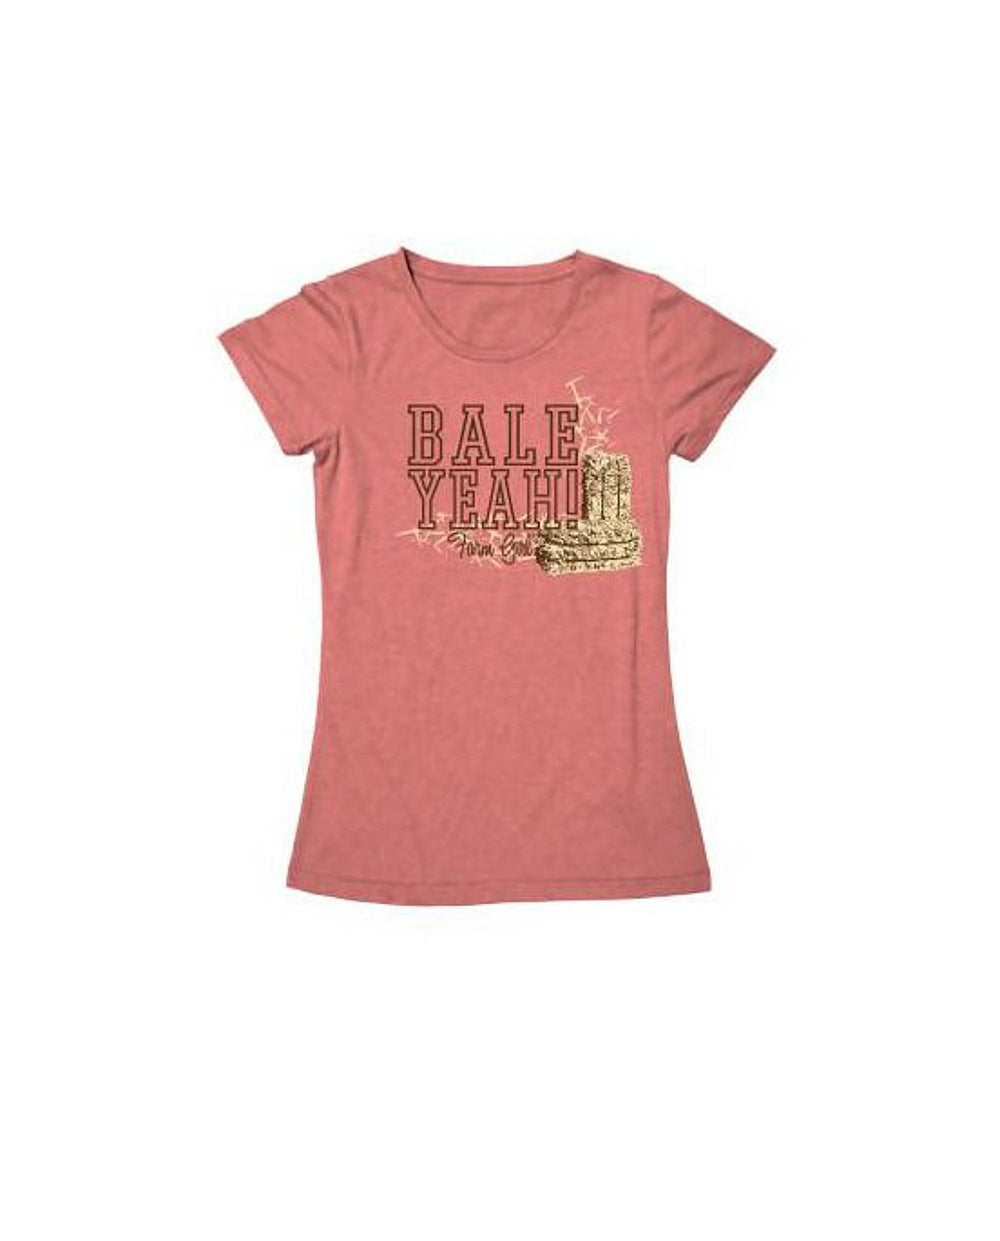 Ladies Farm Girl "Bale Yeah" T-Shirt (Sherbet Pink)(Medium) - 23007224M